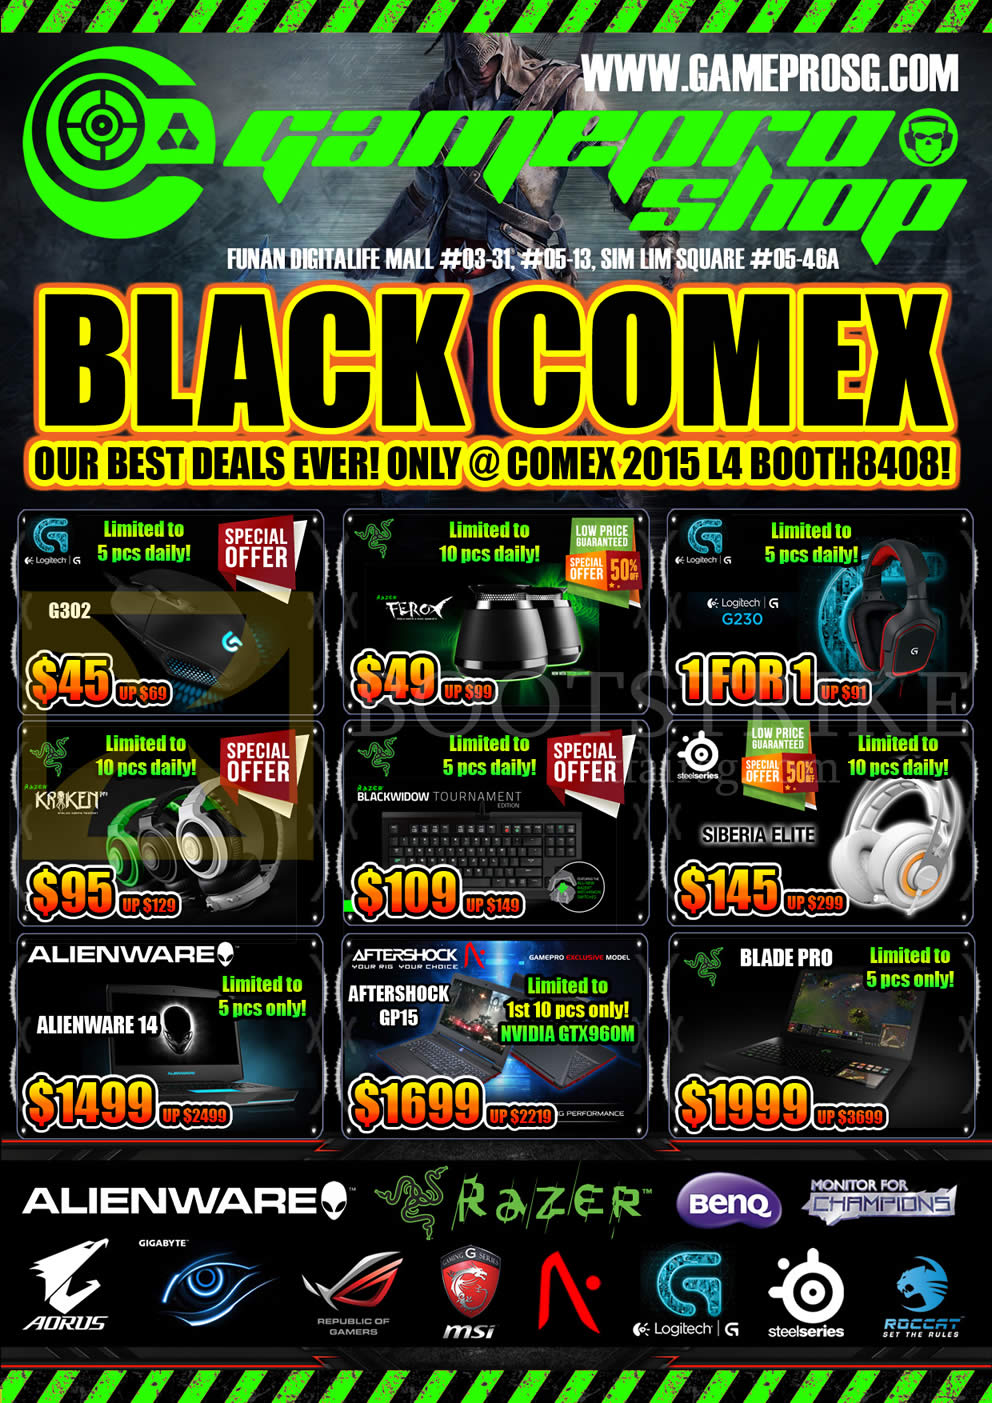 COMEX 2015 price list image brochure of Gamepro Notebooks, Keyboard, Headphones, Speaker, G302, G230, Siberia Elite, Alienware 14, Aftershock GP15, Blade Pro